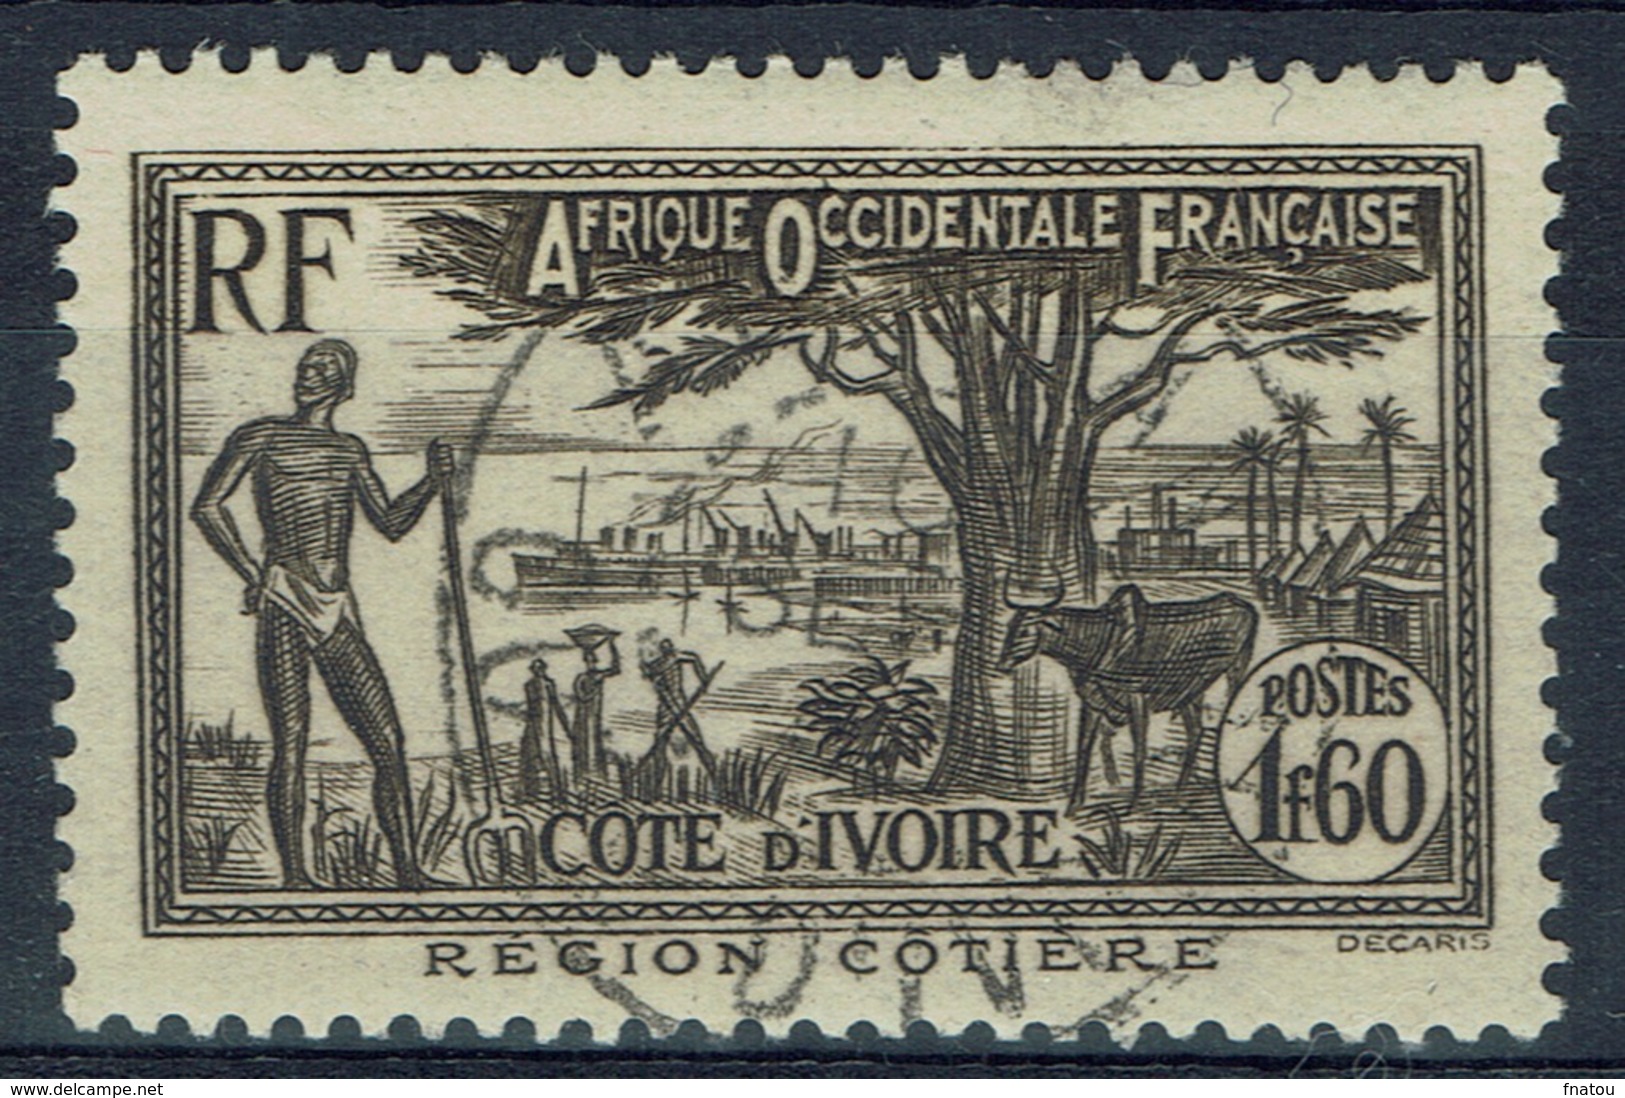 Ivory Coast, 1f.60, Coastal Region, 1939, VFU  nice Postmark - Used Stamps